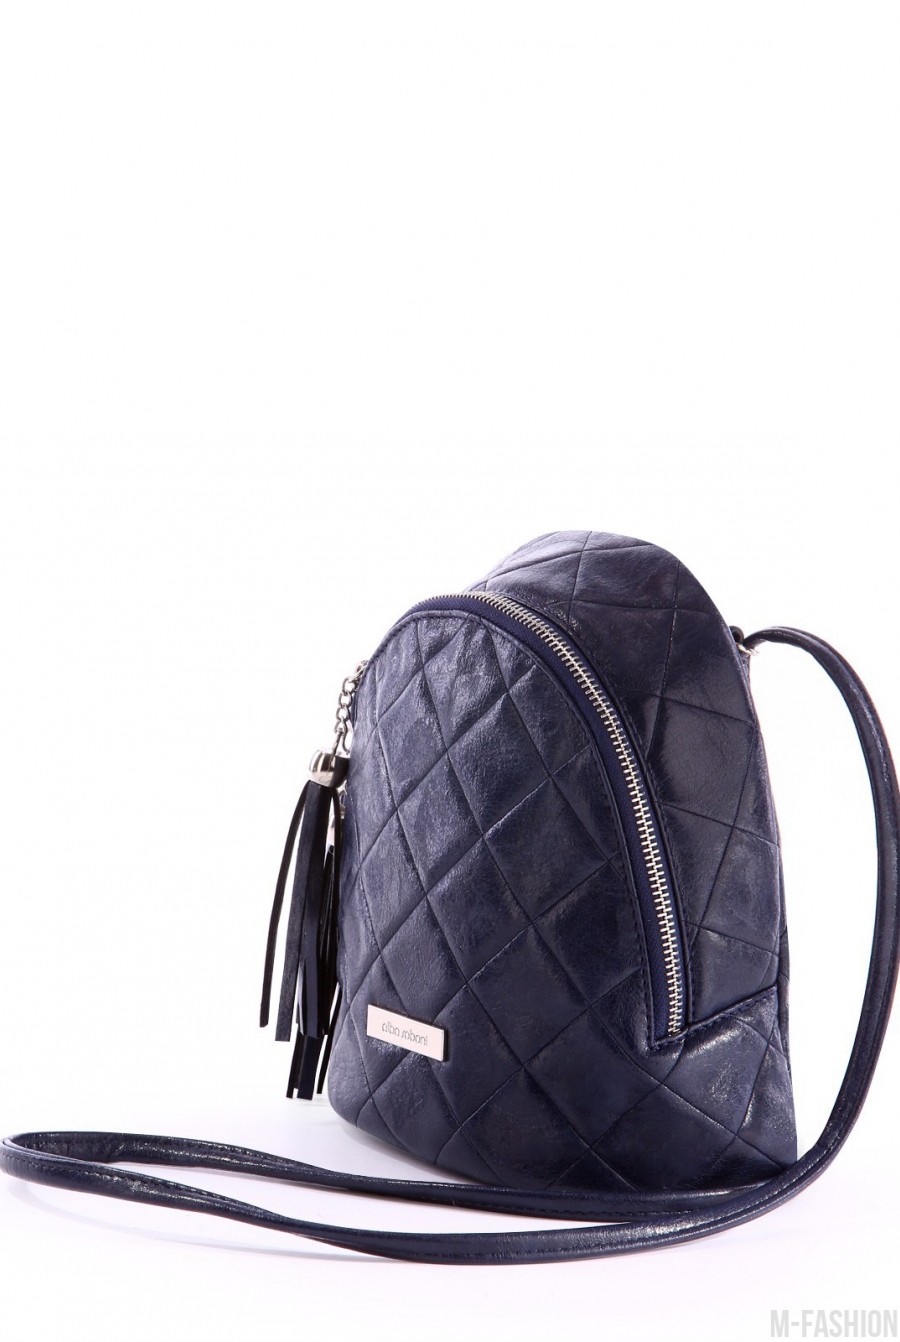 Мини-рюкзак стильного и удобного дизайна- Фото 3